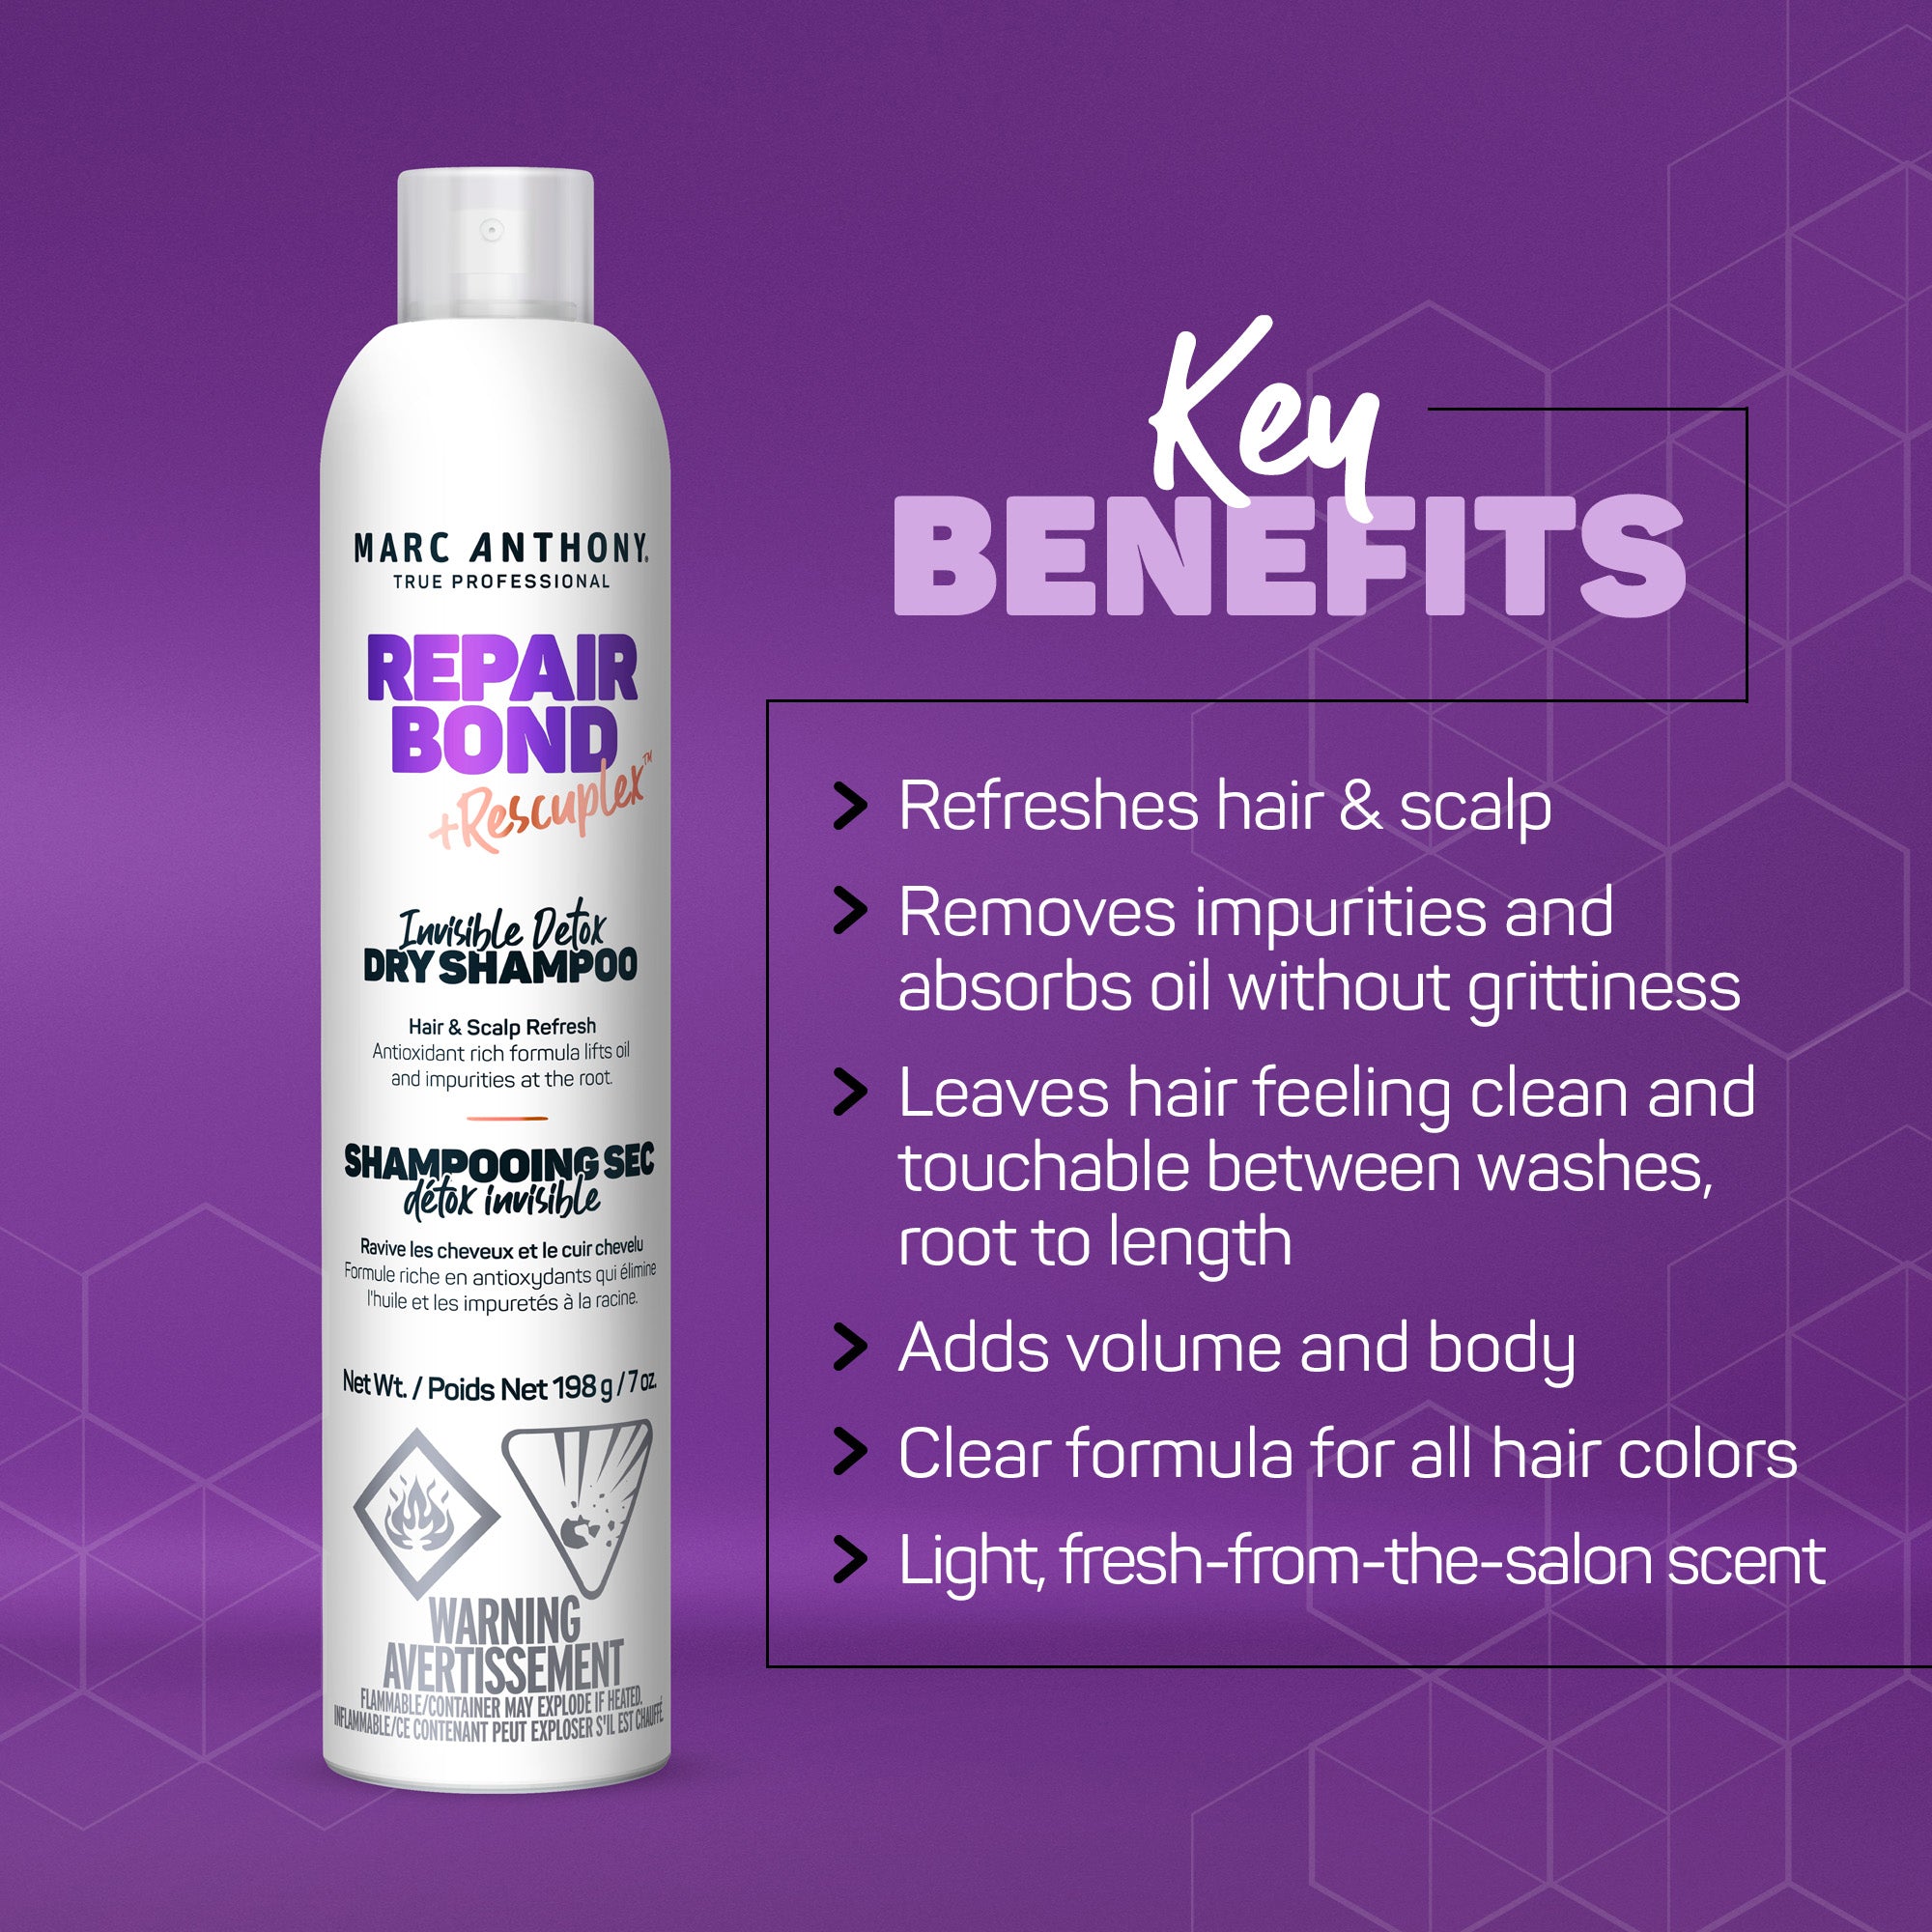 Repair Bond +Rescuplex™ <br> Invisible Detox Dry Shampoo